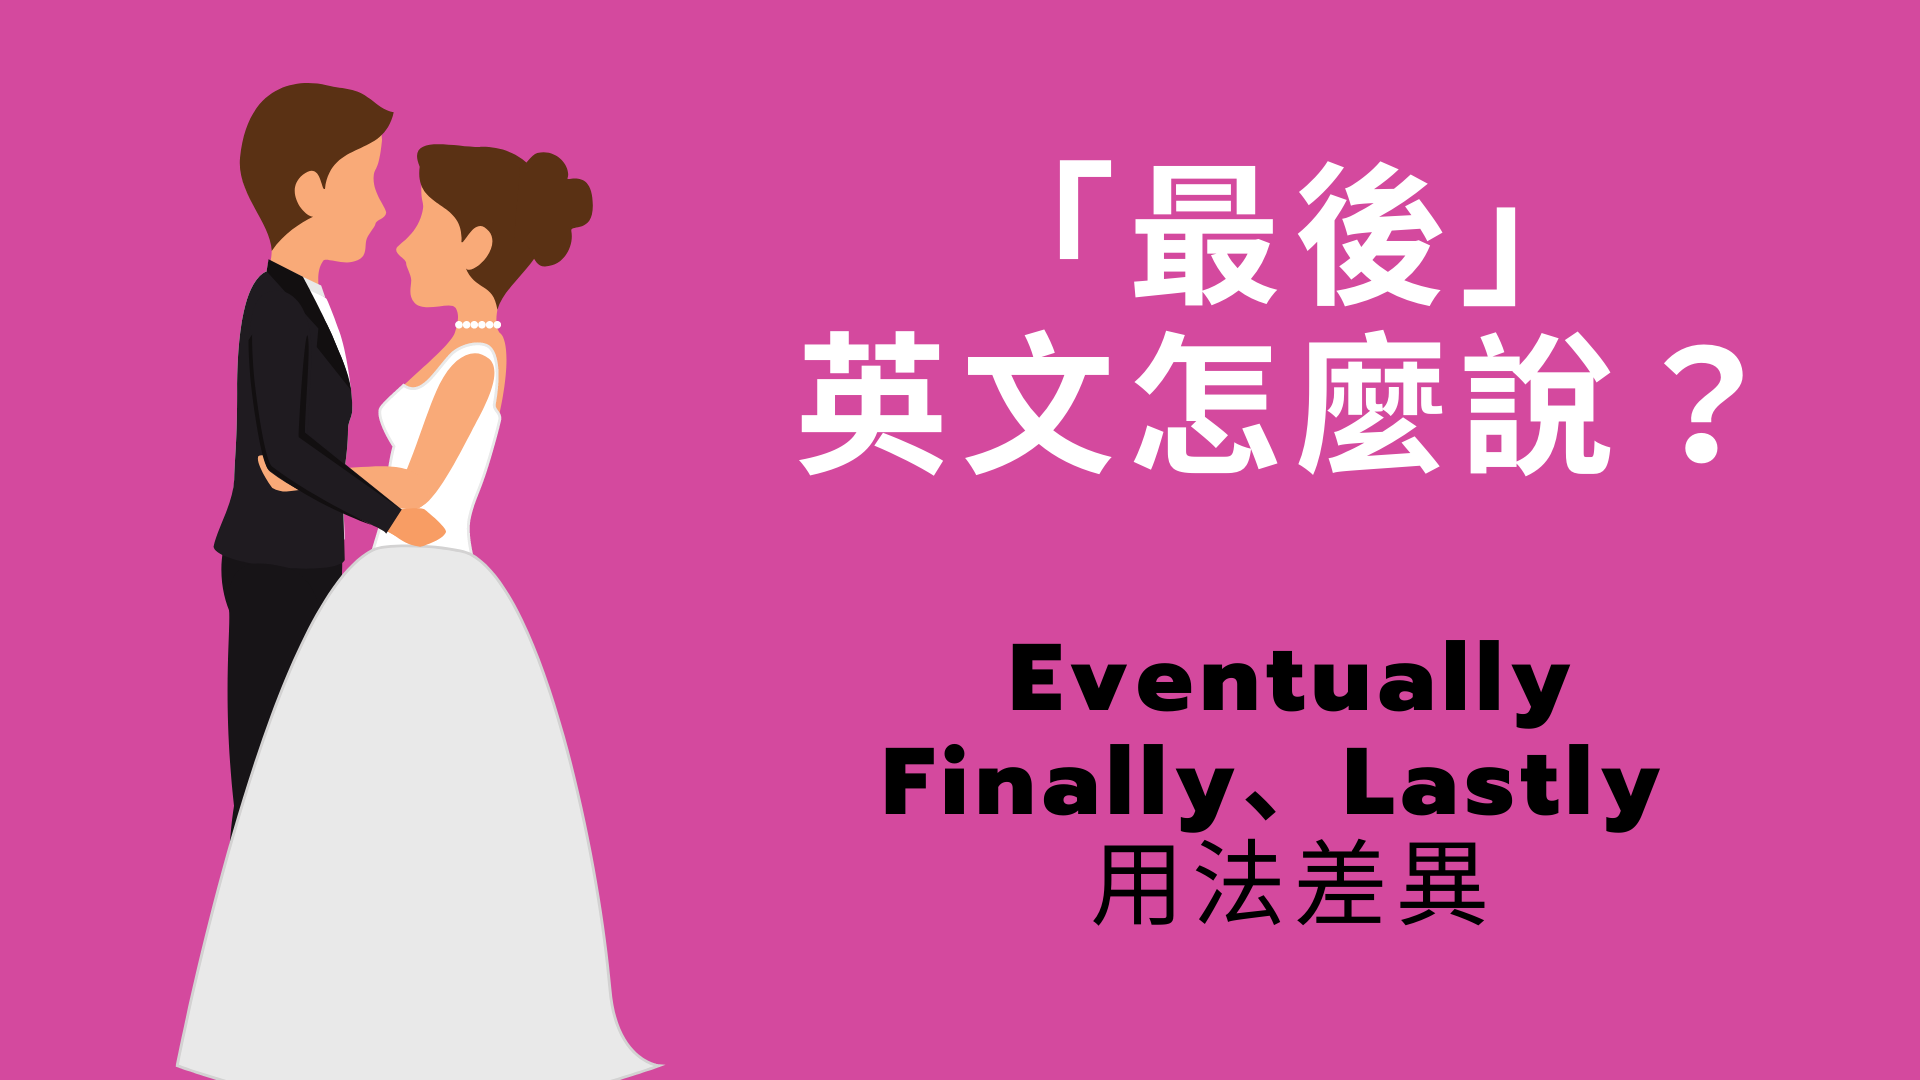 「最後」英文怎麼說？Eventually/ Finally / Lastly 用法與中文意思差異！